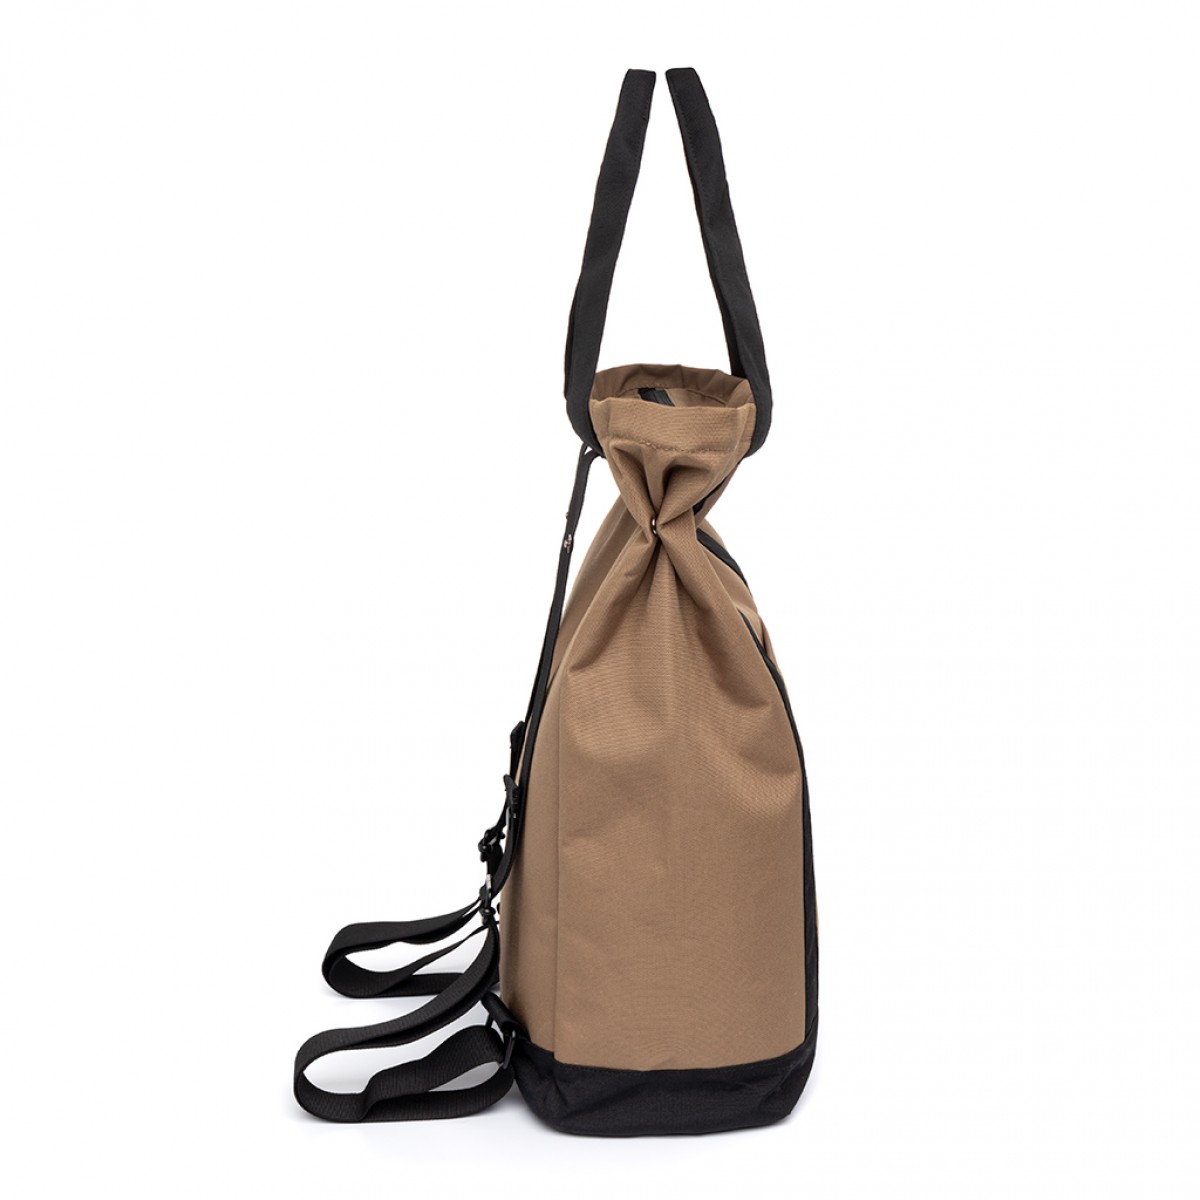 Lefrik - Roots Tote Bag Maxi - Camel - 40 x 43 x 14 cm / 17L